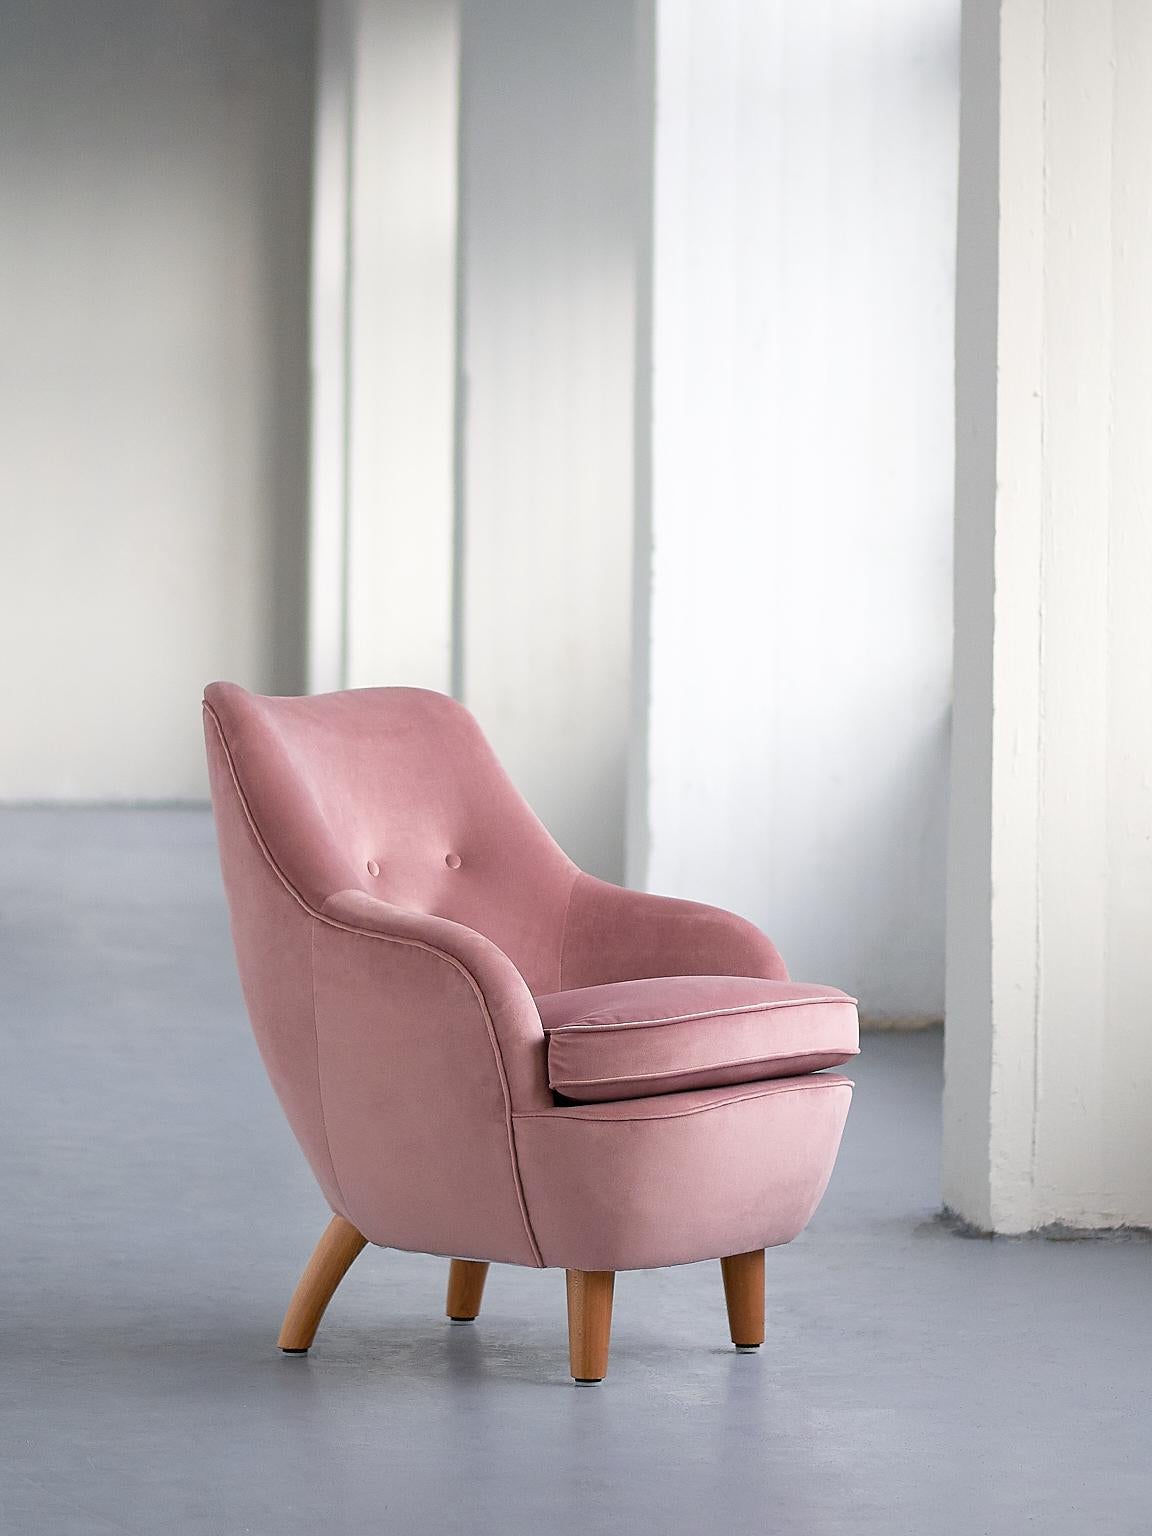 Ce fauteuil rare a été conçu par Runar Engblom pour l'hôtel Vaakuna à Helsinki en 1951. La forme ronde et incurvée donne à la chaise un aspect saisissant. Les pieds arrière, de forme organique et pliés vers l'extérieur, et les pieds avant, ronds et